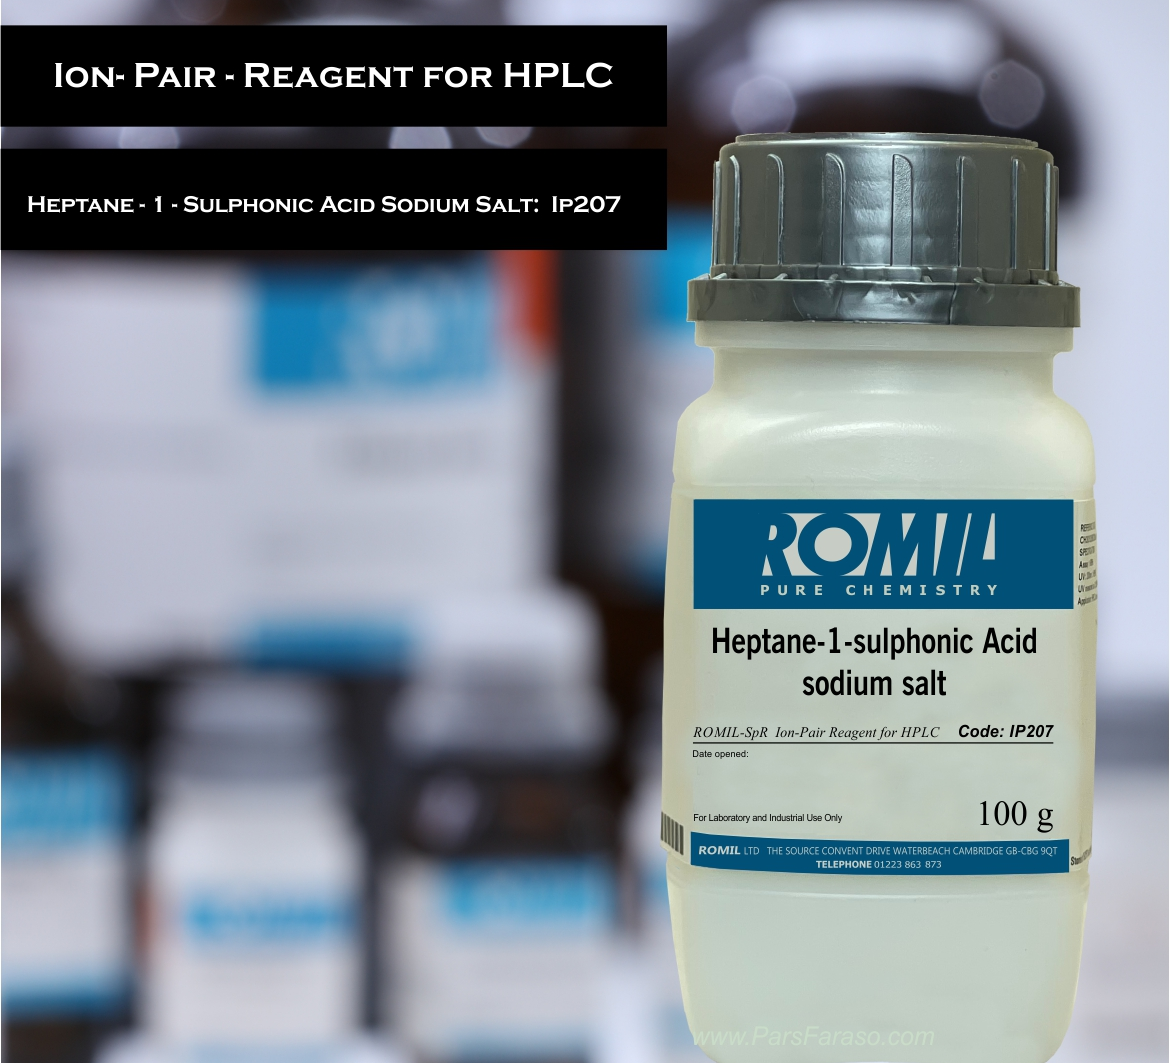 هپتان 1 سولفونیک اسید سدیم سالت SpR